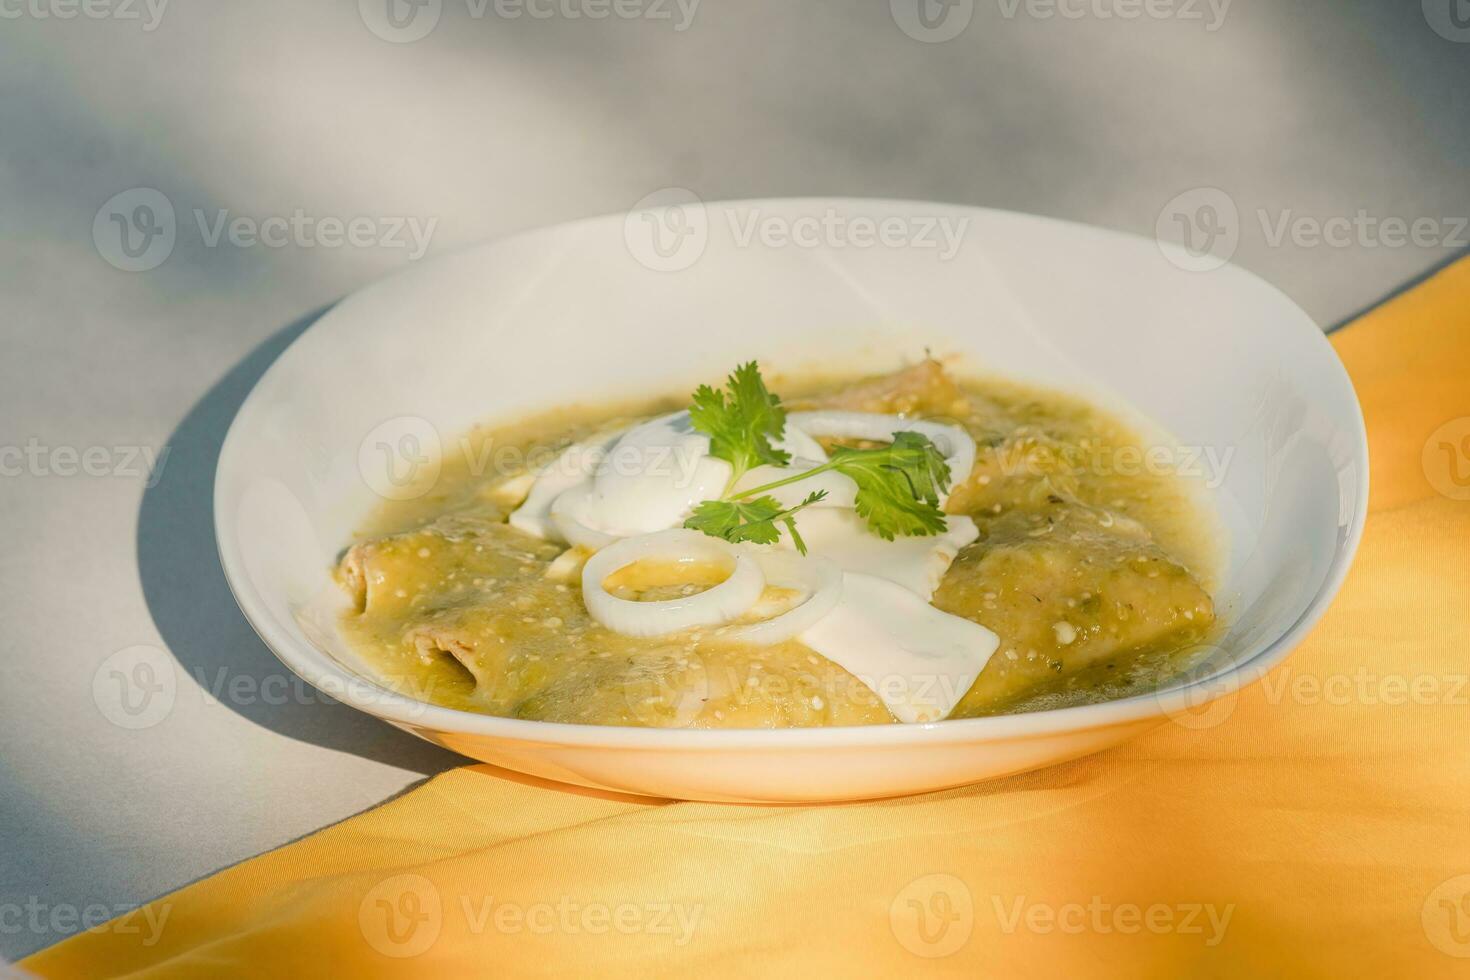 el mexicano enchiladas verdes, un grapa comida en mexicano cocina, son servido en un plato foto